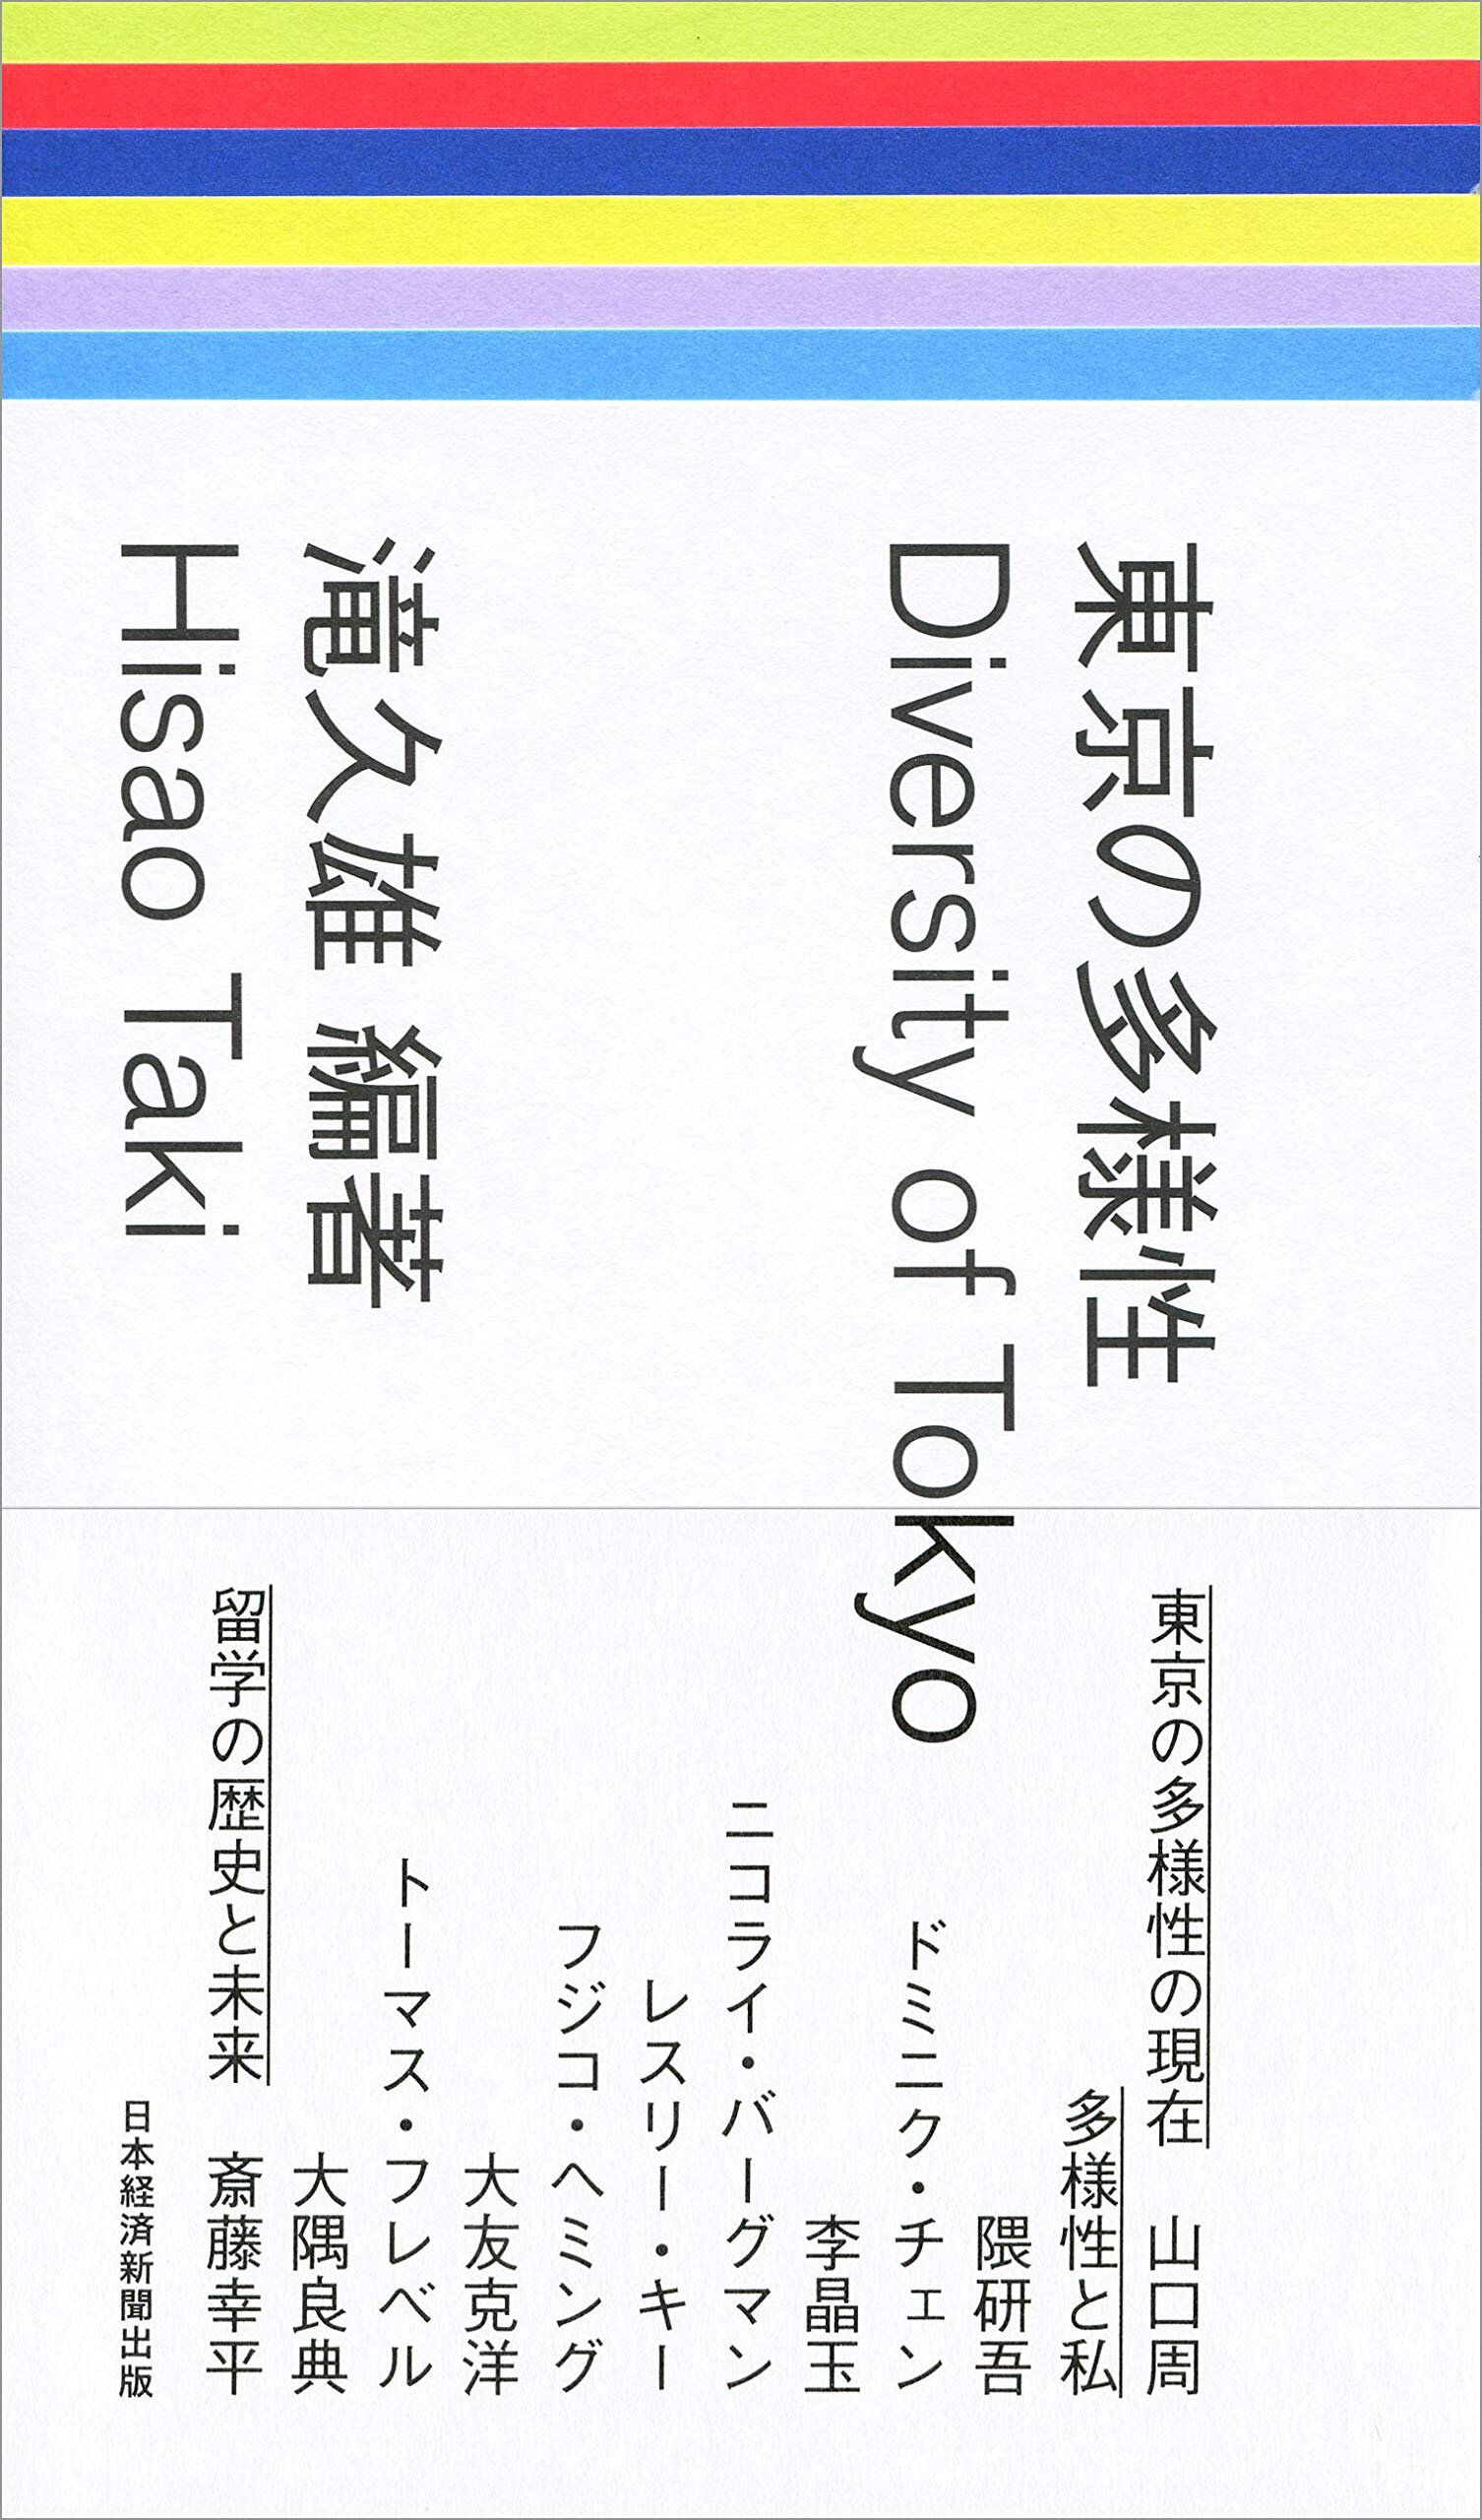 滝久雄編著『東京の多様性』